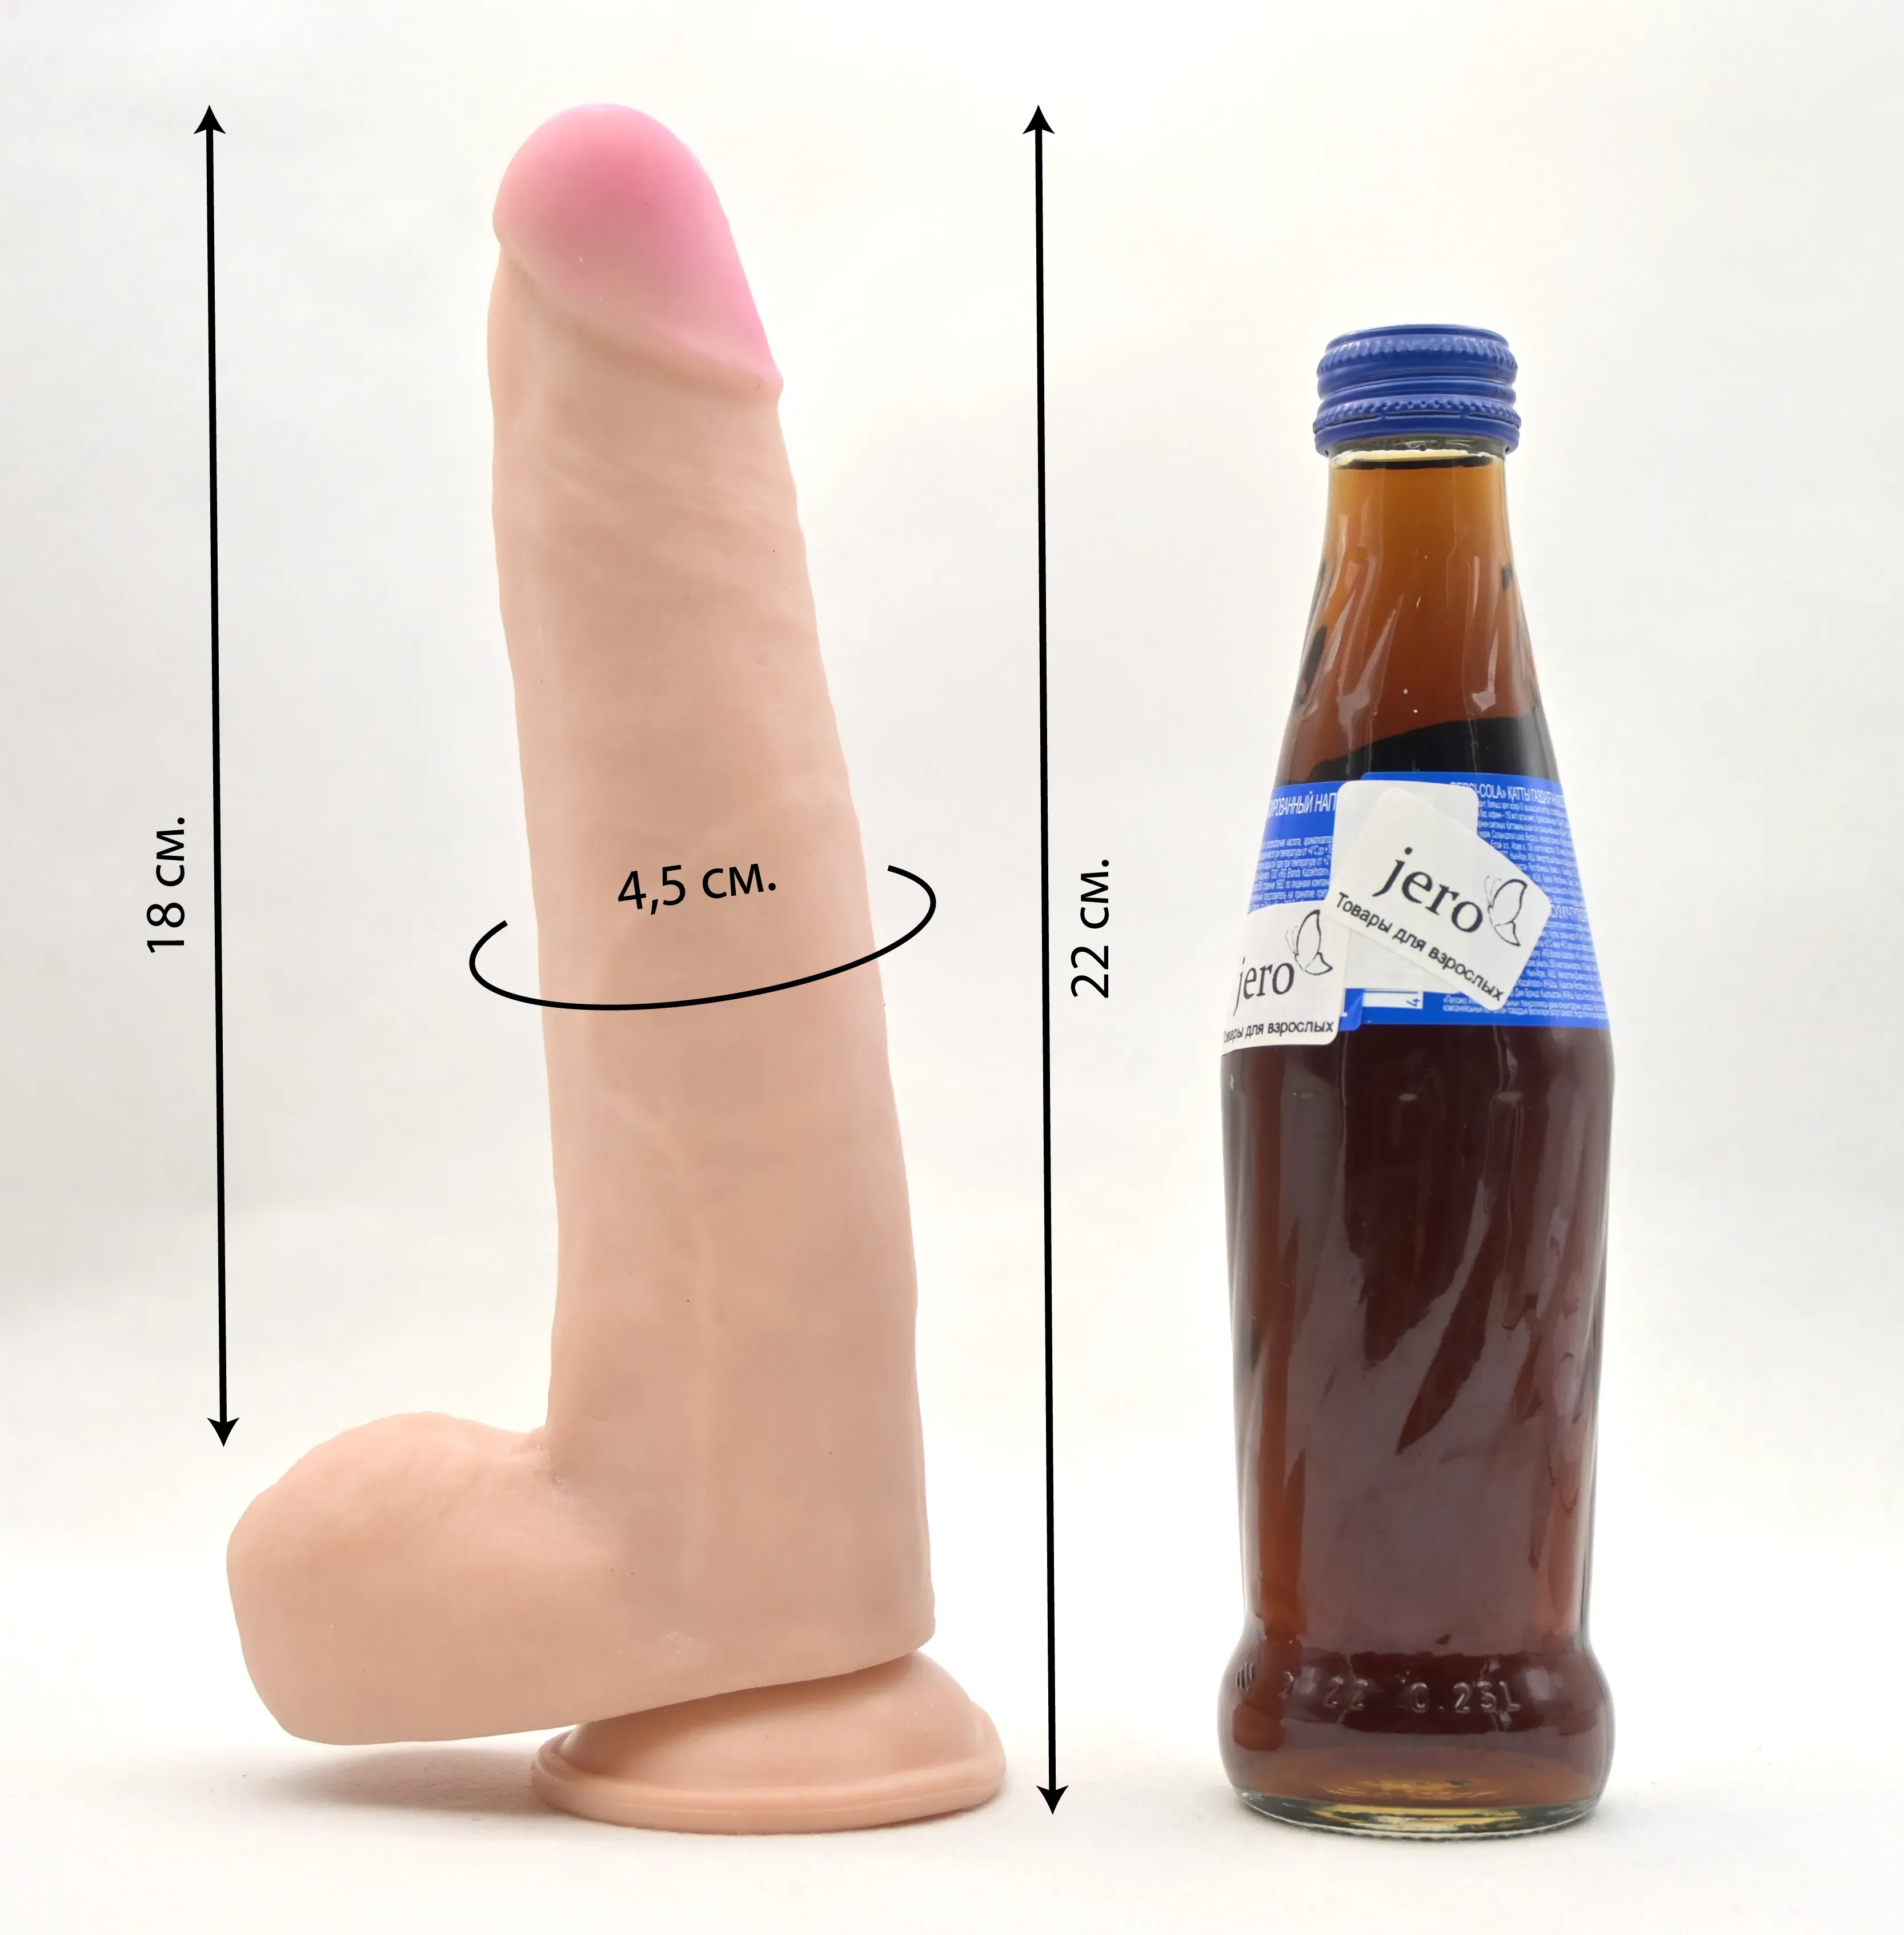 Размеры дилдо и сравнение с бутылкой колы